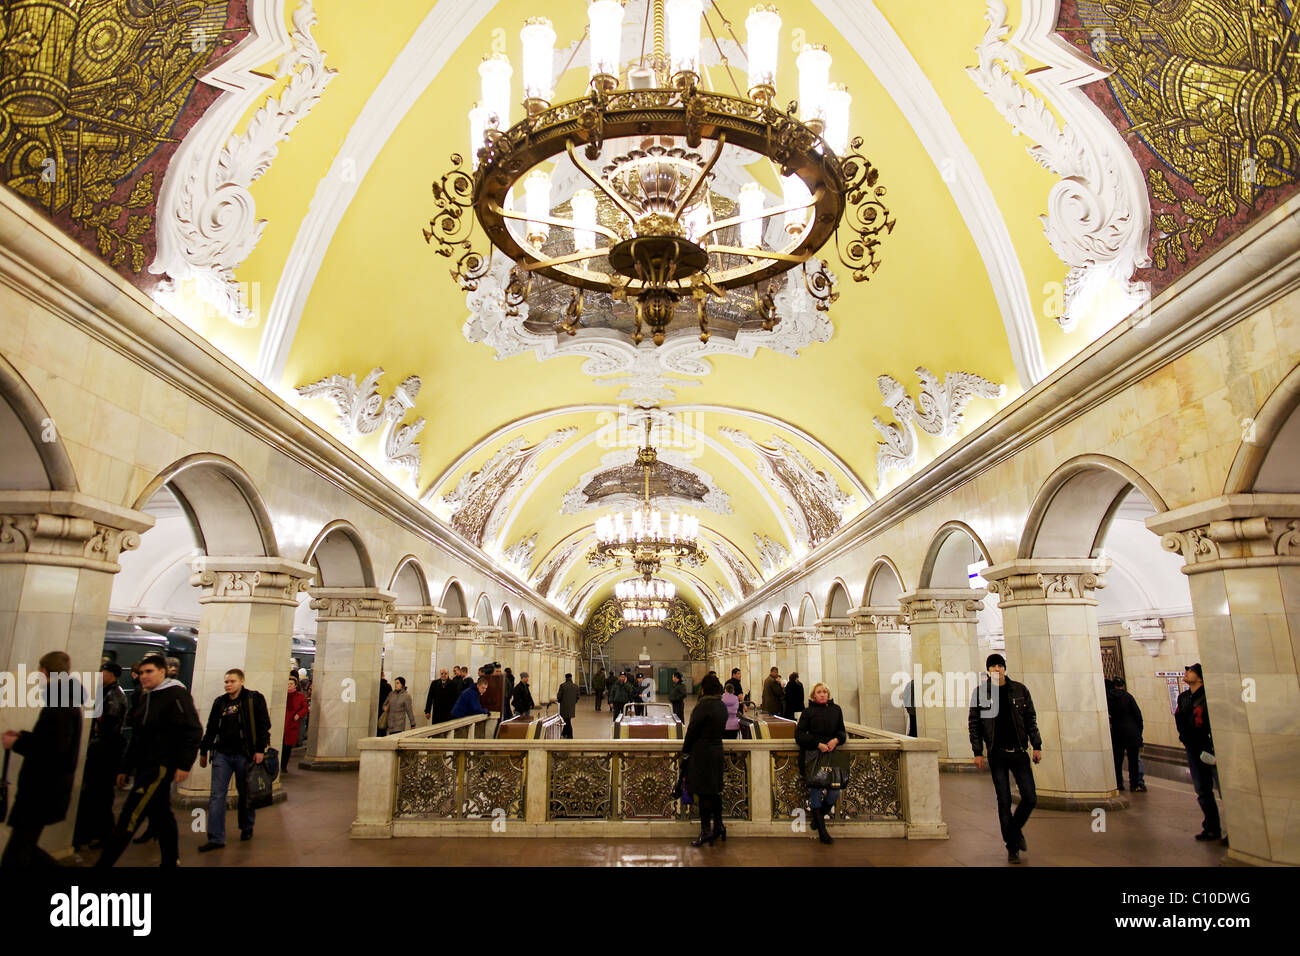 Spettacolari soffitti a volta e lampadari a Mosca Komsomolskaya stazione della metropolitana, Russia Foto Stock